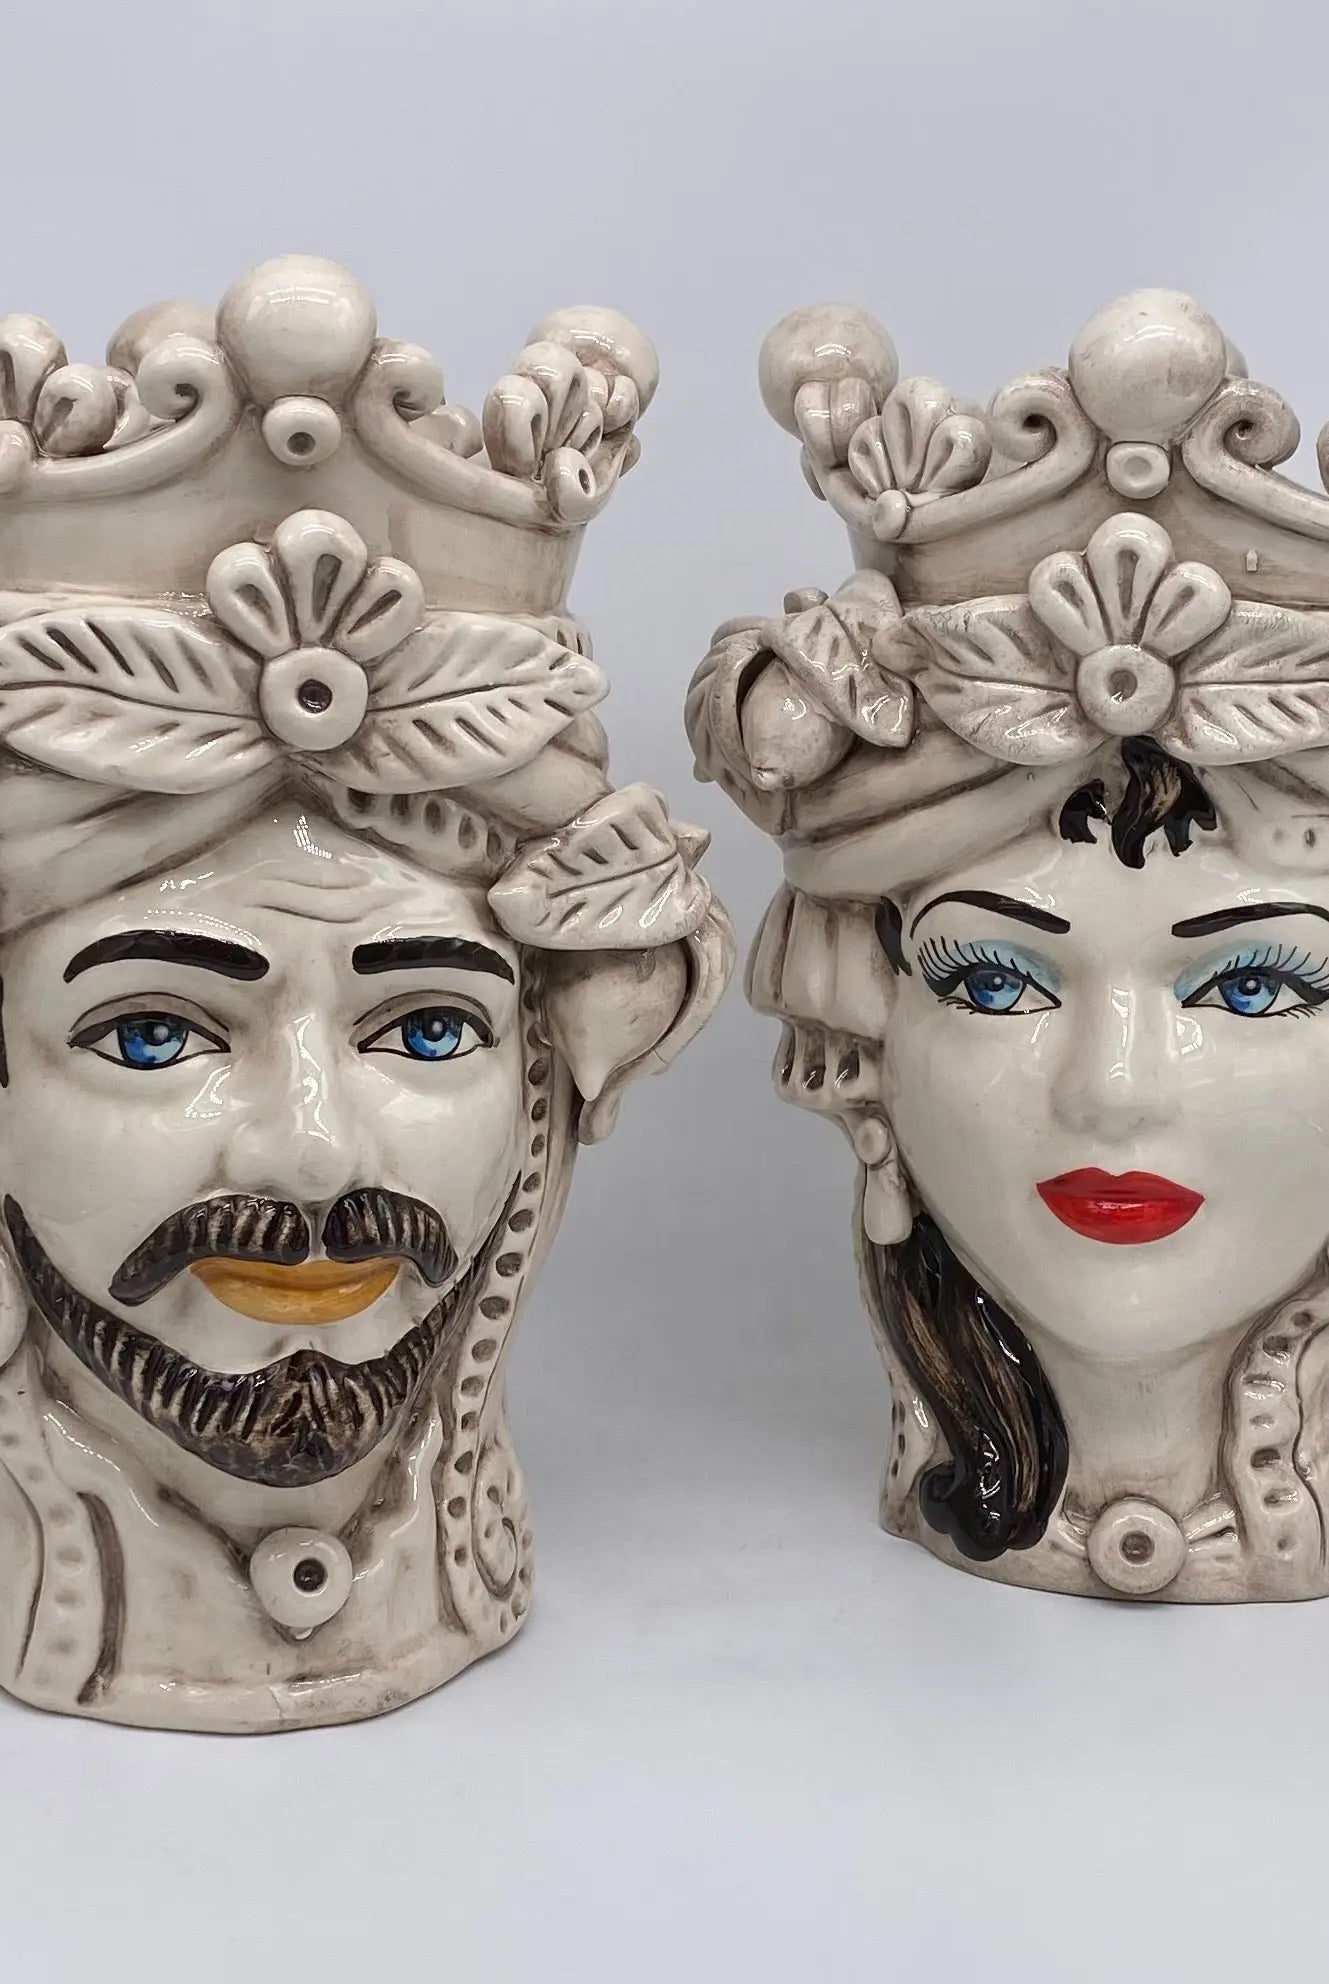 Teste di Moro Classica Corona Sfere Écru Ceramica di Caltagirone cm H.28 L.20 Artigianale - DD CERAMICHE SICILIANE